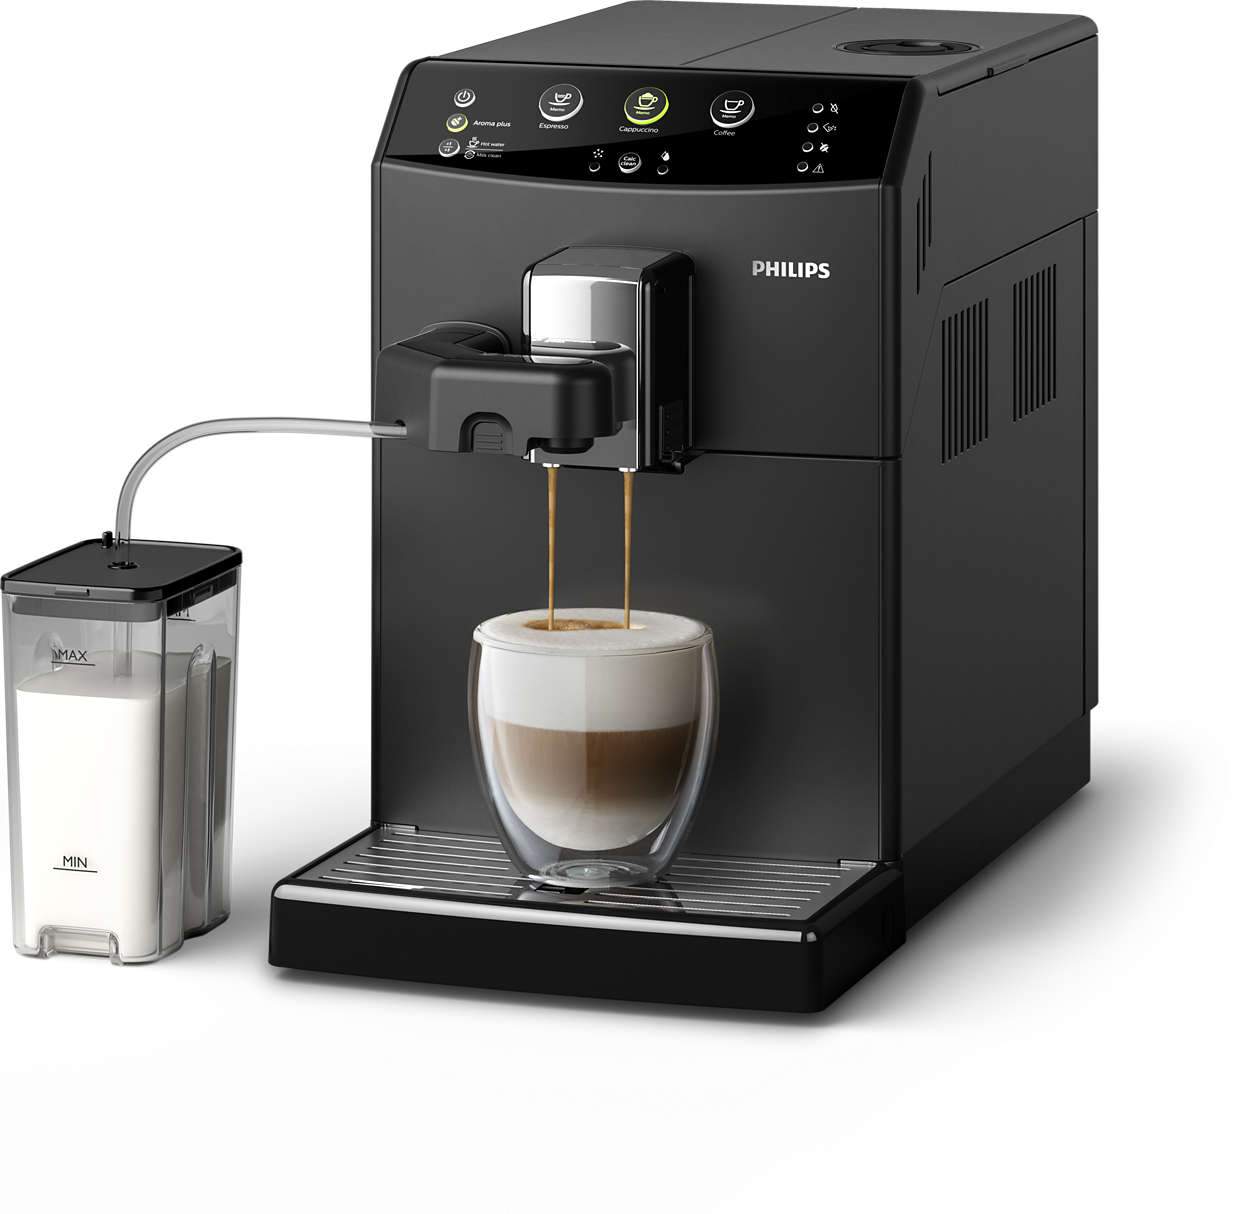 Volautomatische Koffiemachine Kopen In 2020 | Top 5 Reviews Acties